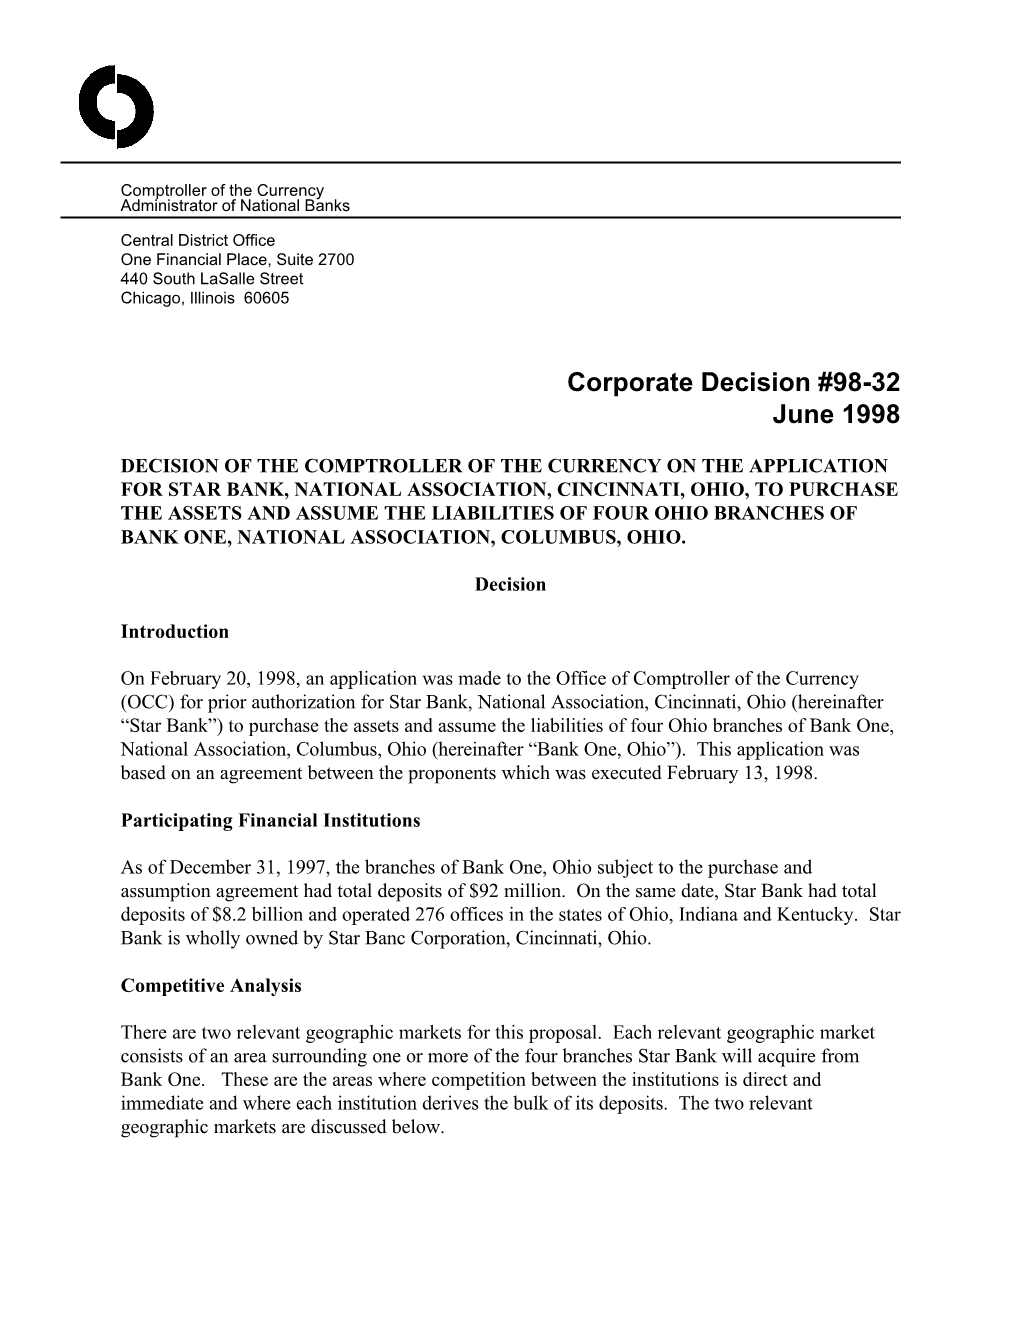 Corporate Decision #98-32 June 1998